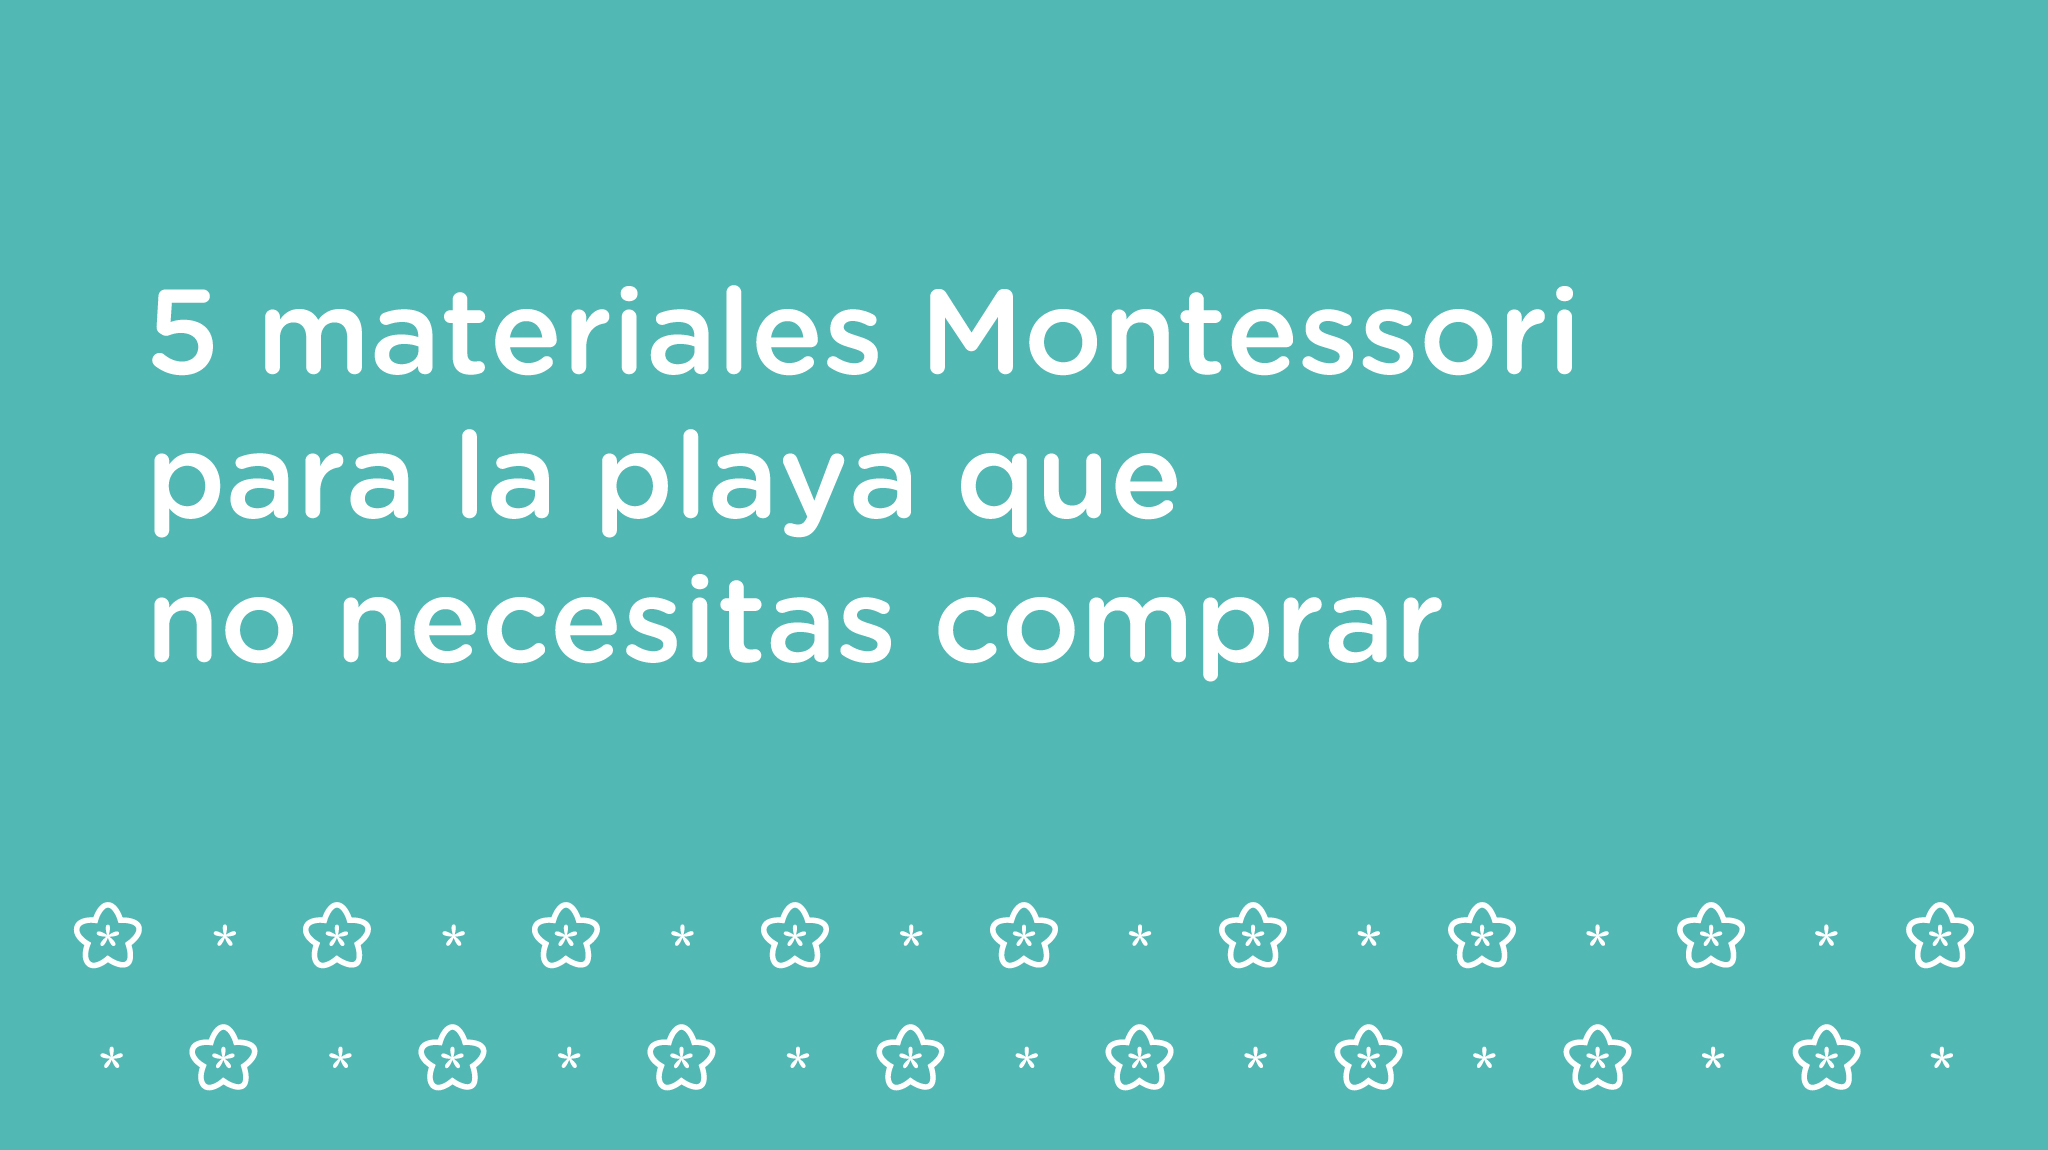 Caja sensorial misteriosa Montessori